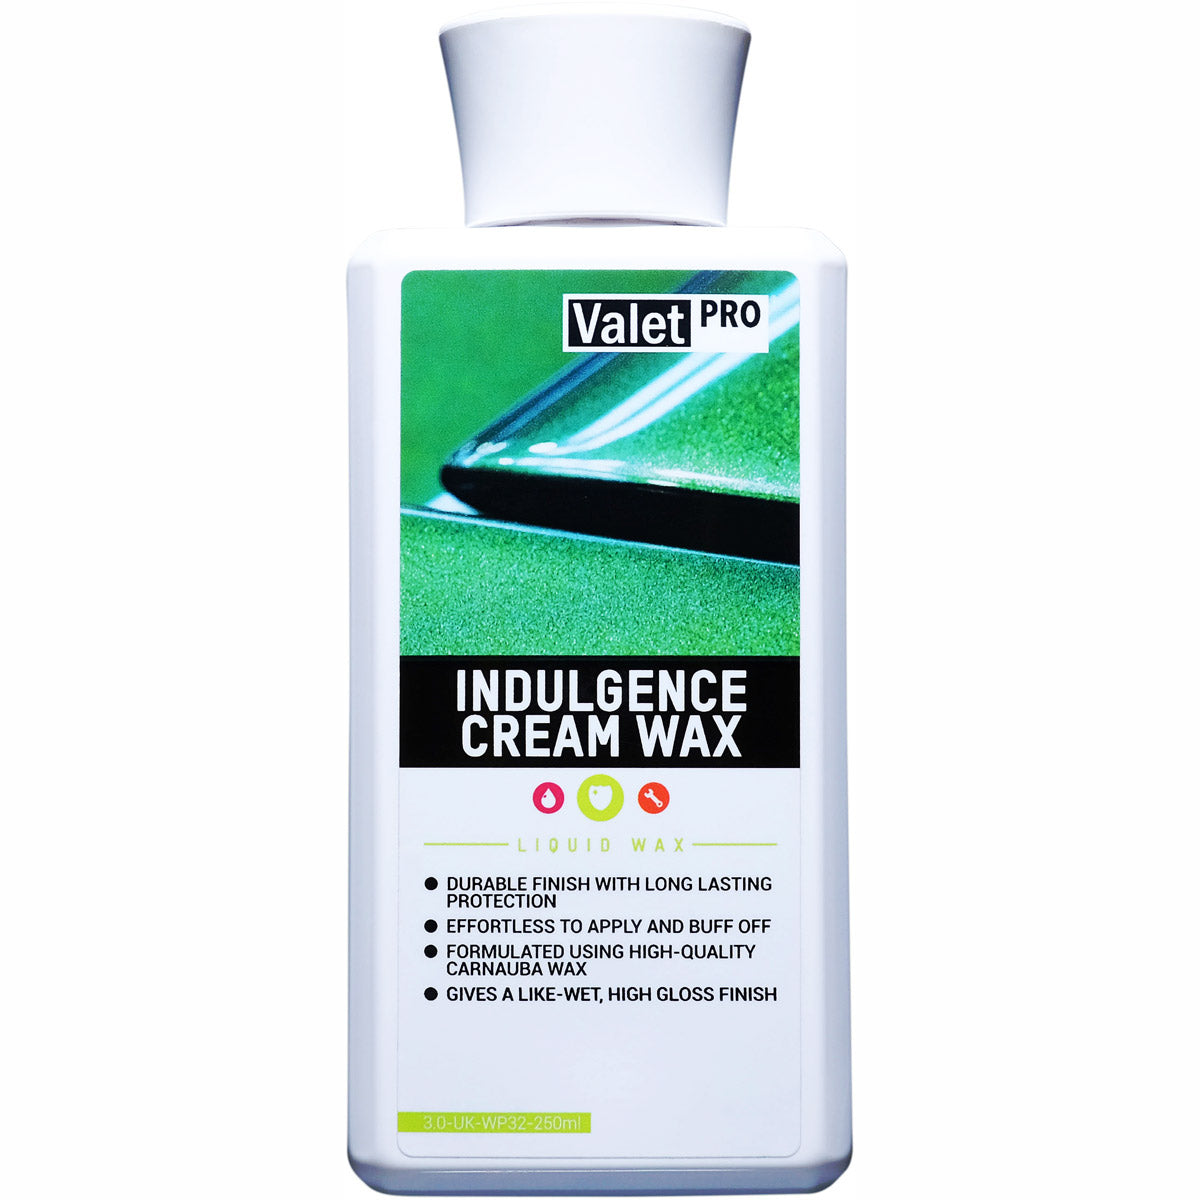 ValetPRO Indulgence Cream Wax - Liquid Wax- 500ml bottle